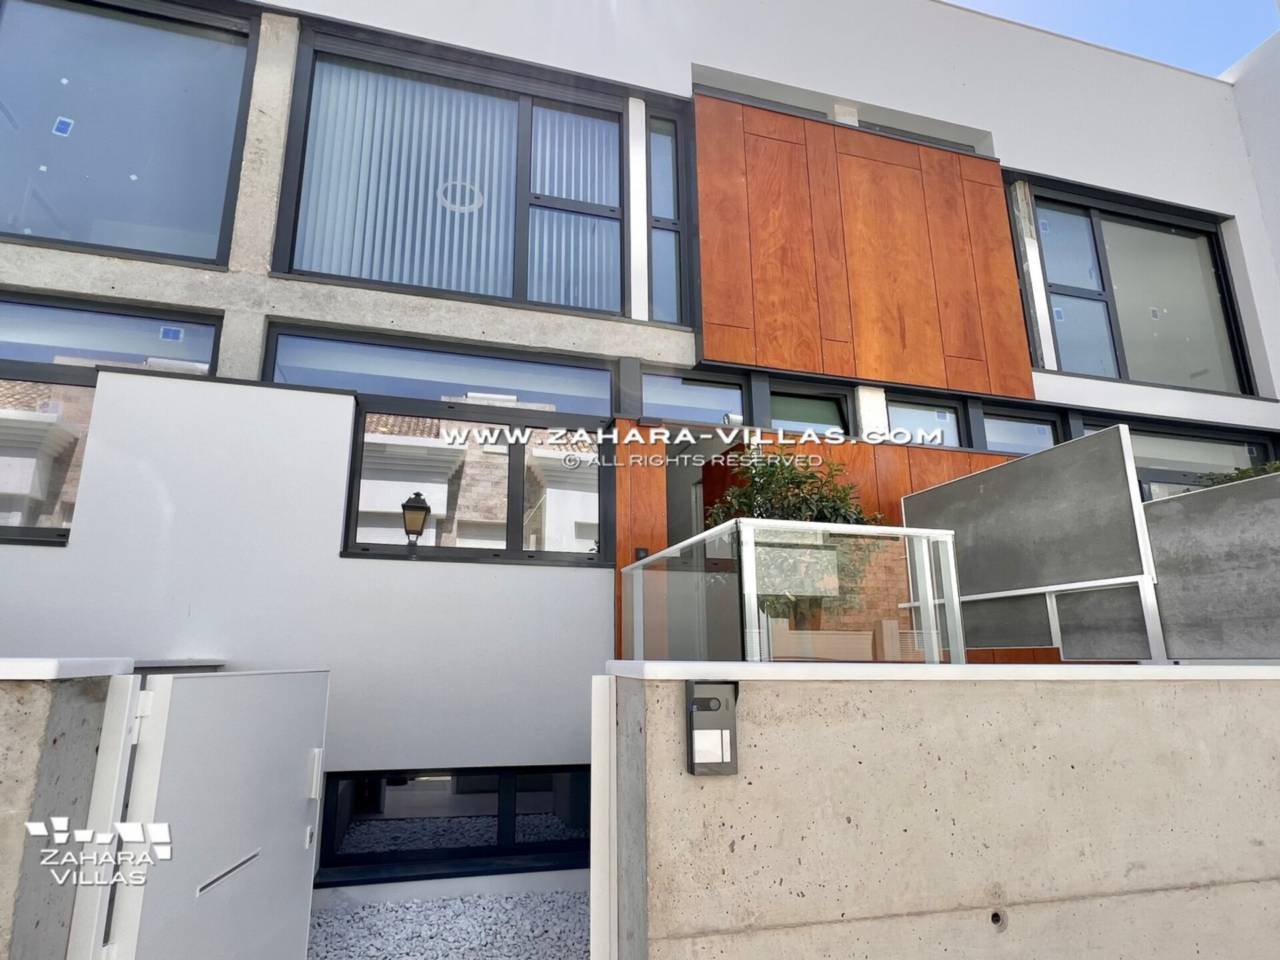 Imagen 41 de Promoción obra nueva terminada "EL OASIS DE ZAHARA" viviendas adosadas junto al mar